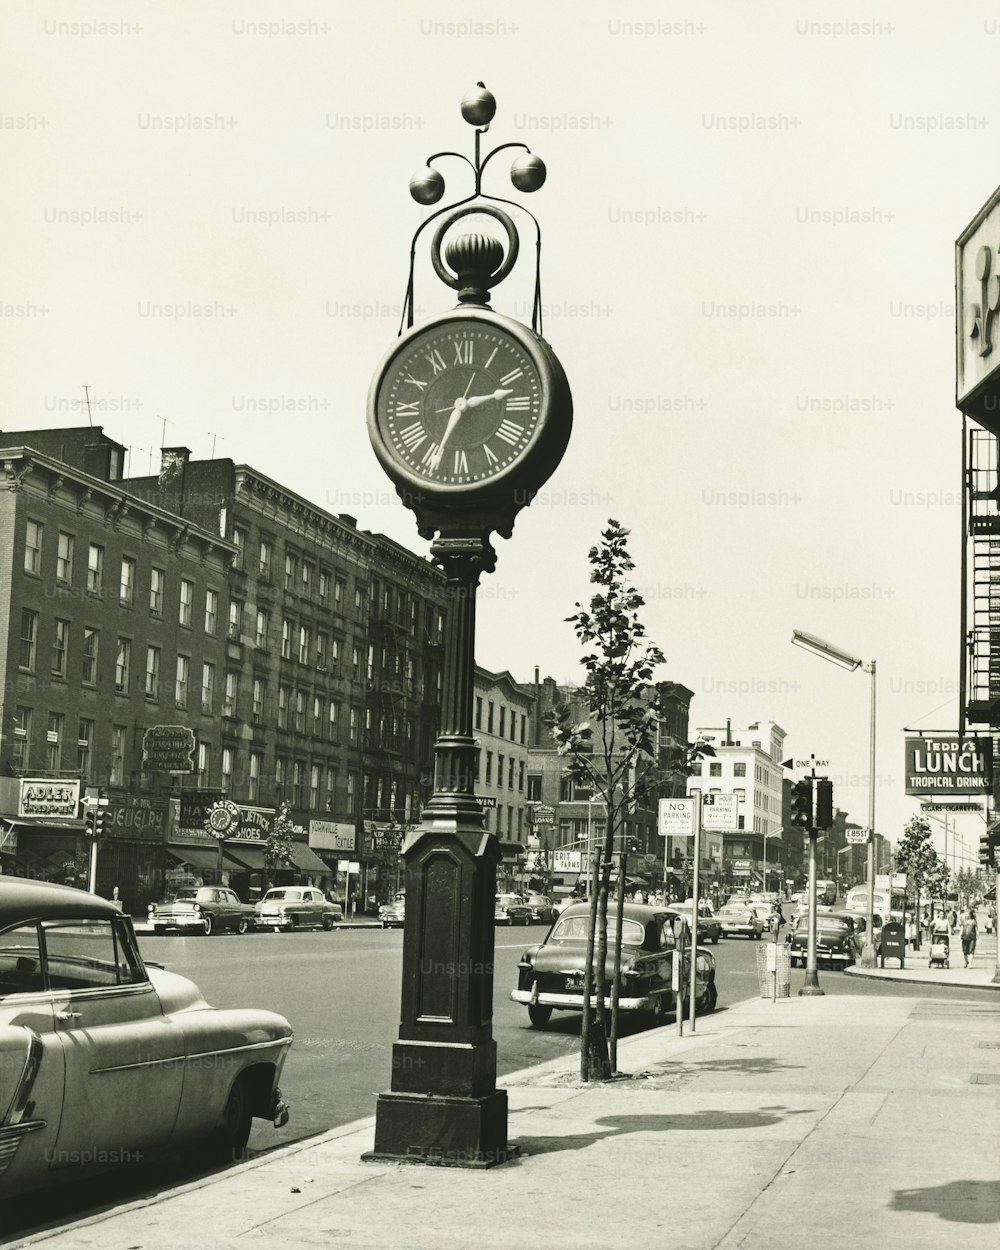 une photo en noir et blanc d’une horloge sur un poteau